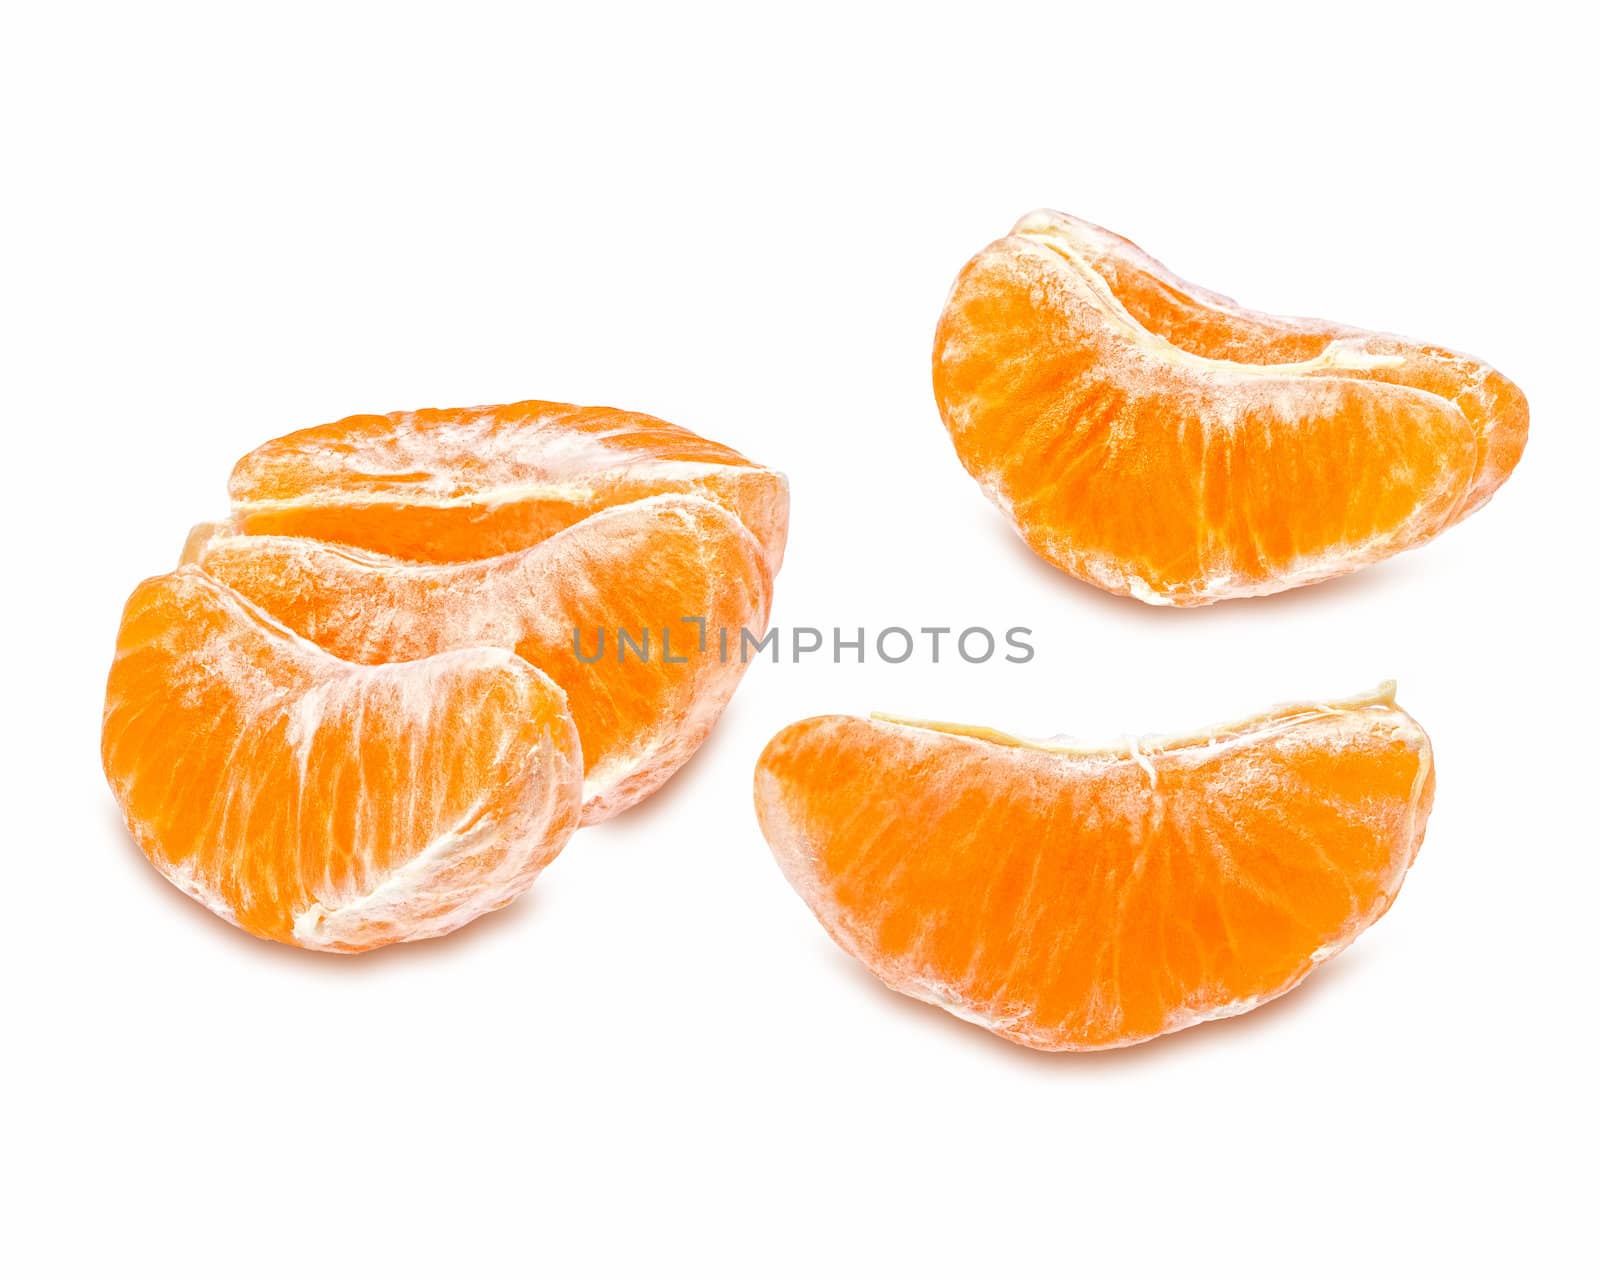 Slices of juicy tangerine by palinchak